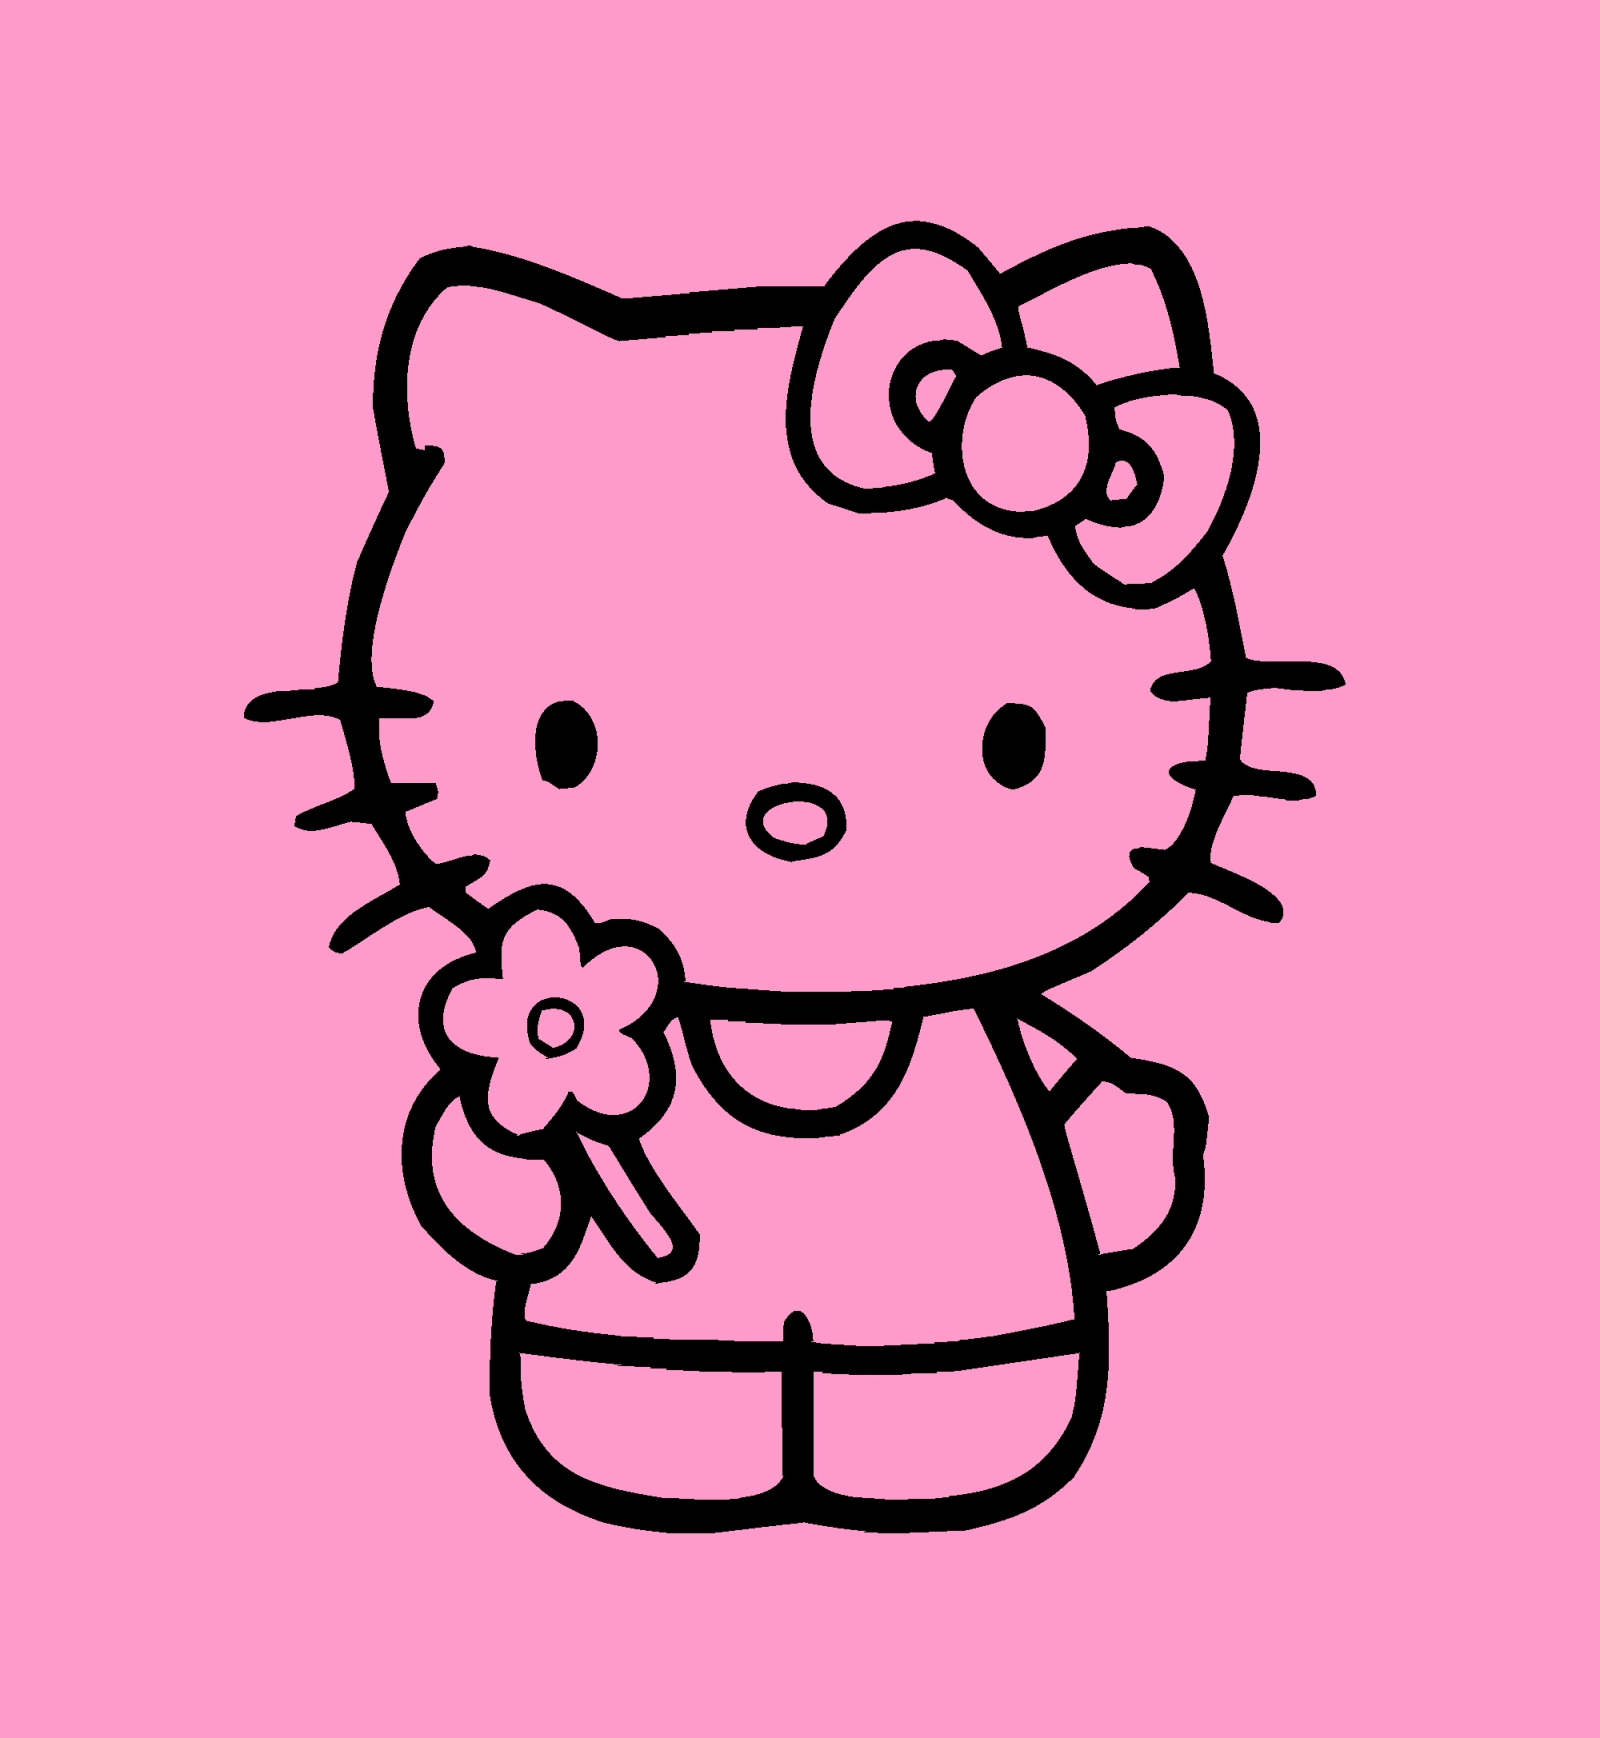 Sự xuất hiện của Hello Kitty luôn làm cho mọi người cảm thấy tươi vui và hạnh phúc. Với hàng loạt sản phẩm mang hình ảnh nhân vật này, bạn sẽ không thể không yêu thích sự đáng yêu và tinh nghịch của Hello Kitty.